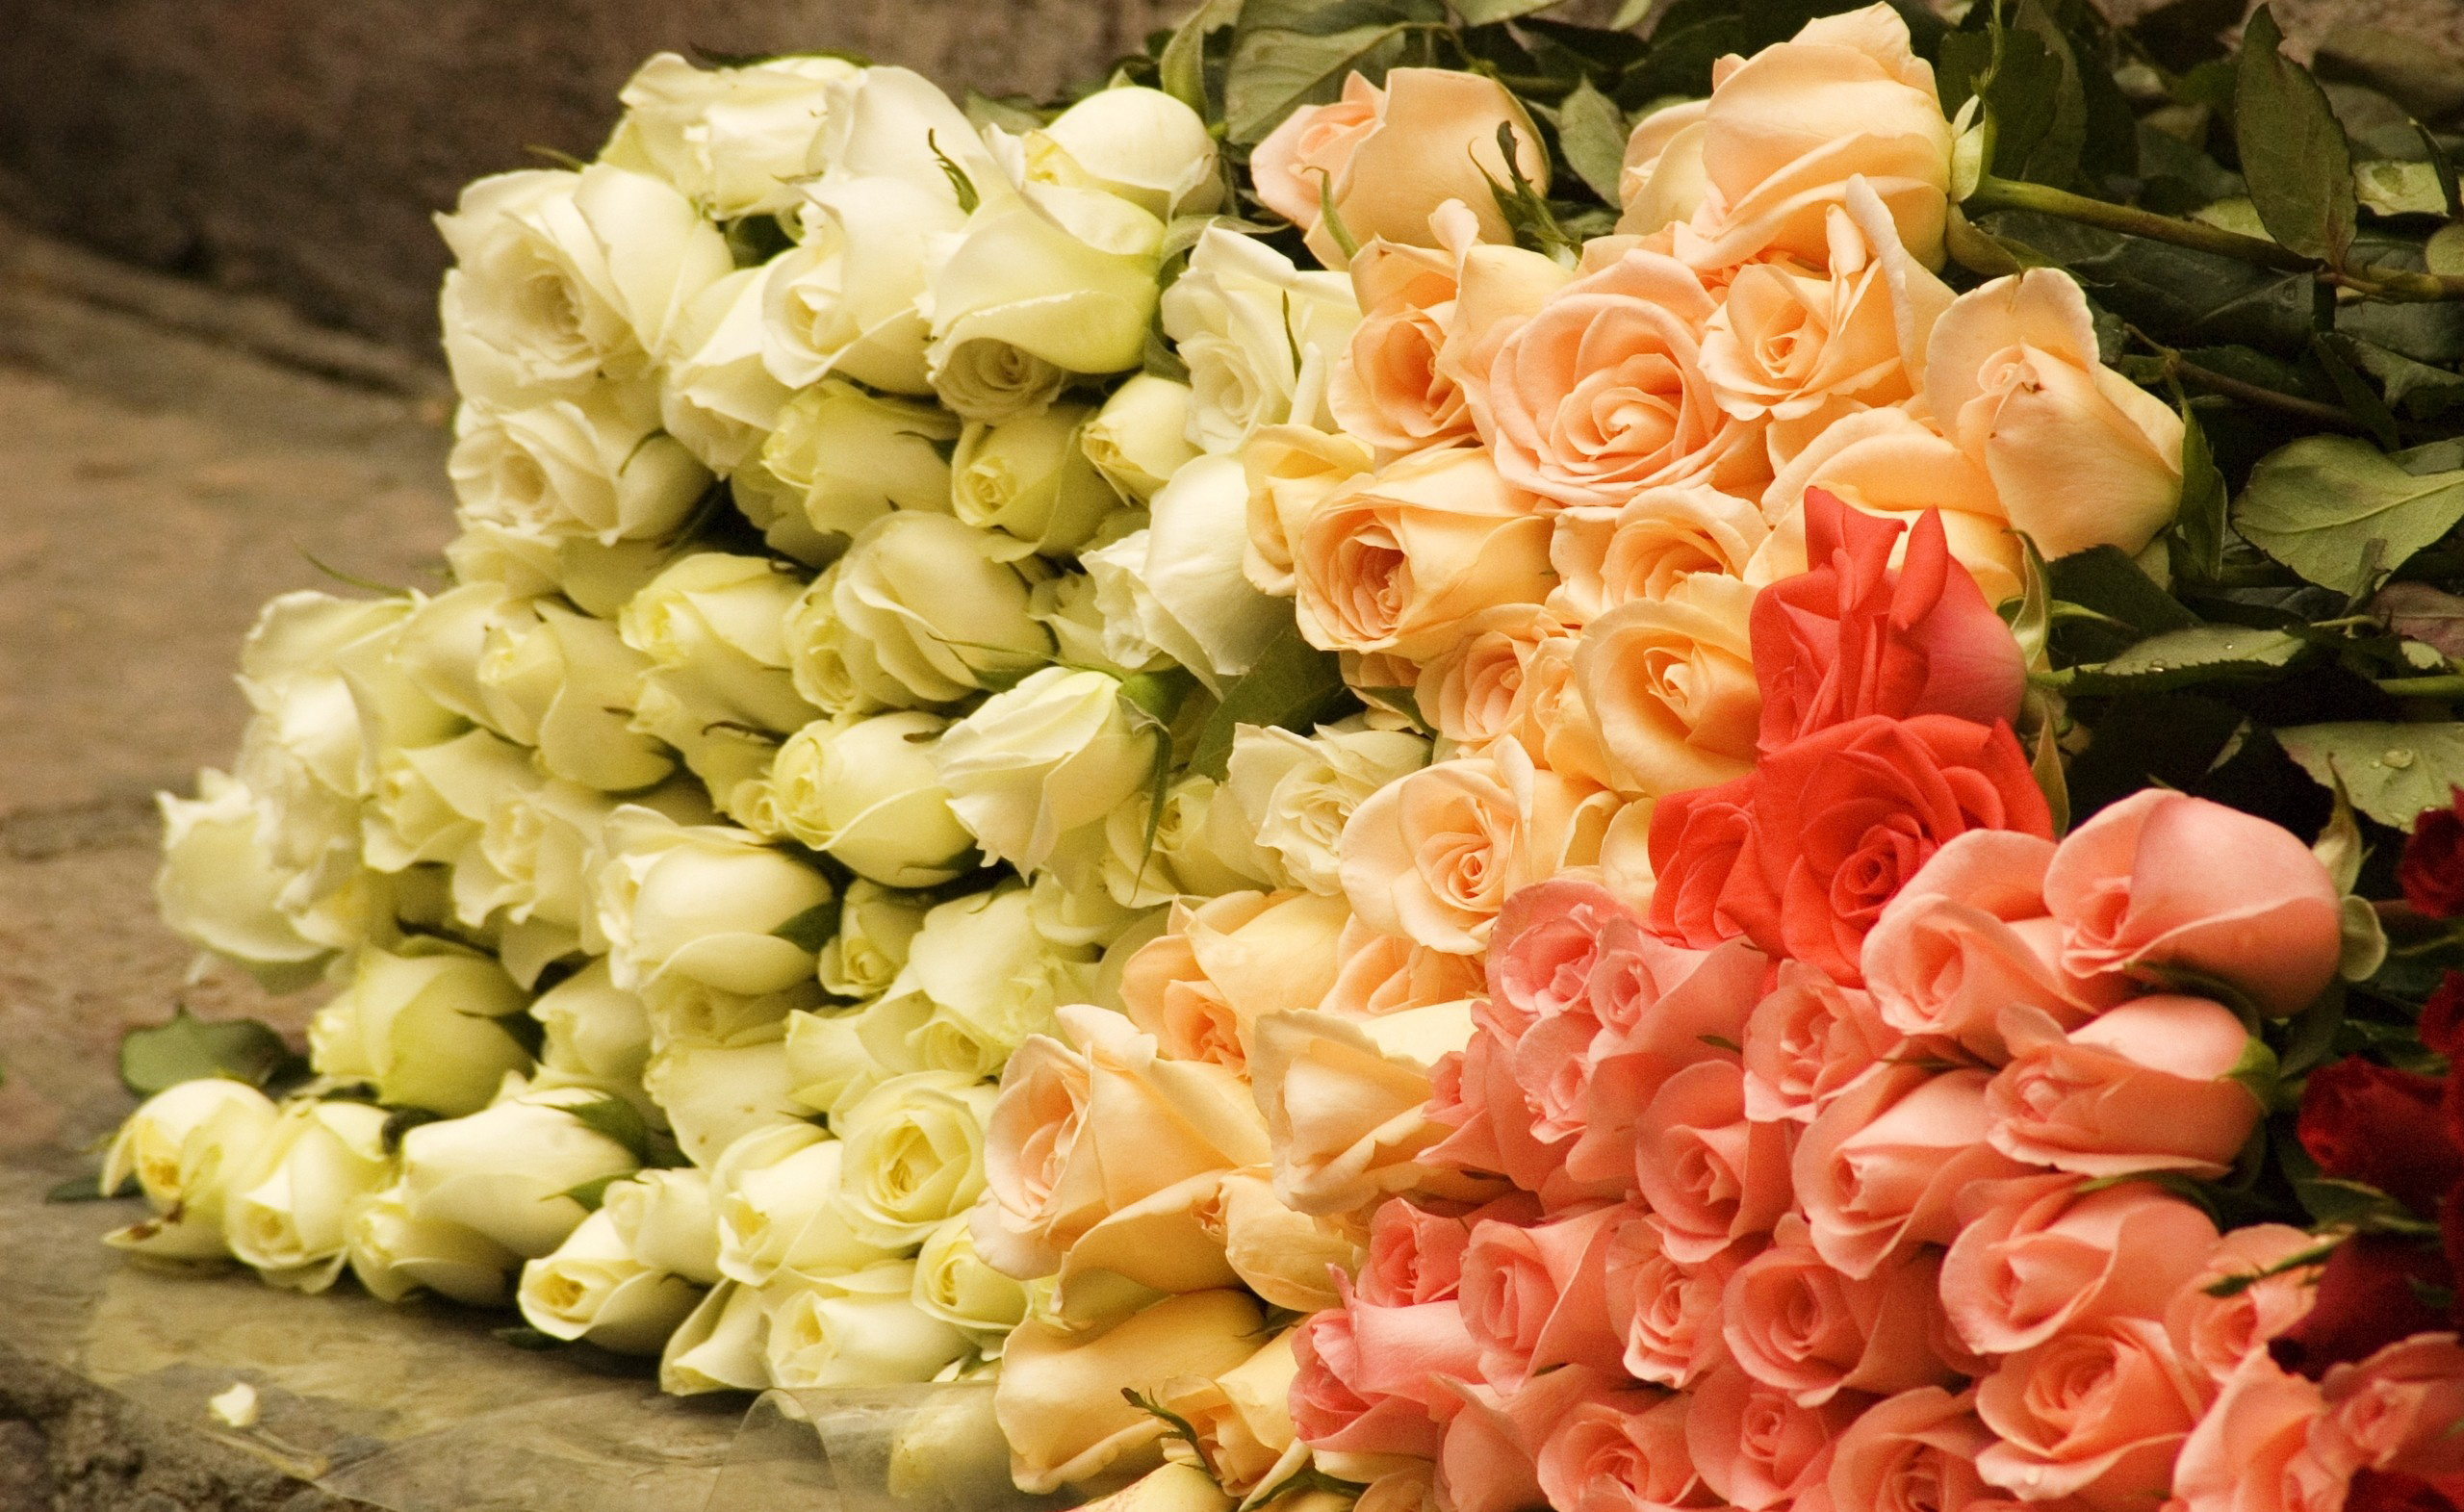 Скачать обои бесплатно Цветок, Роза, Белый Цветок, Земля/природа, Персиковый Цветок, Флауэрсы картинка на рабочий стол ПК